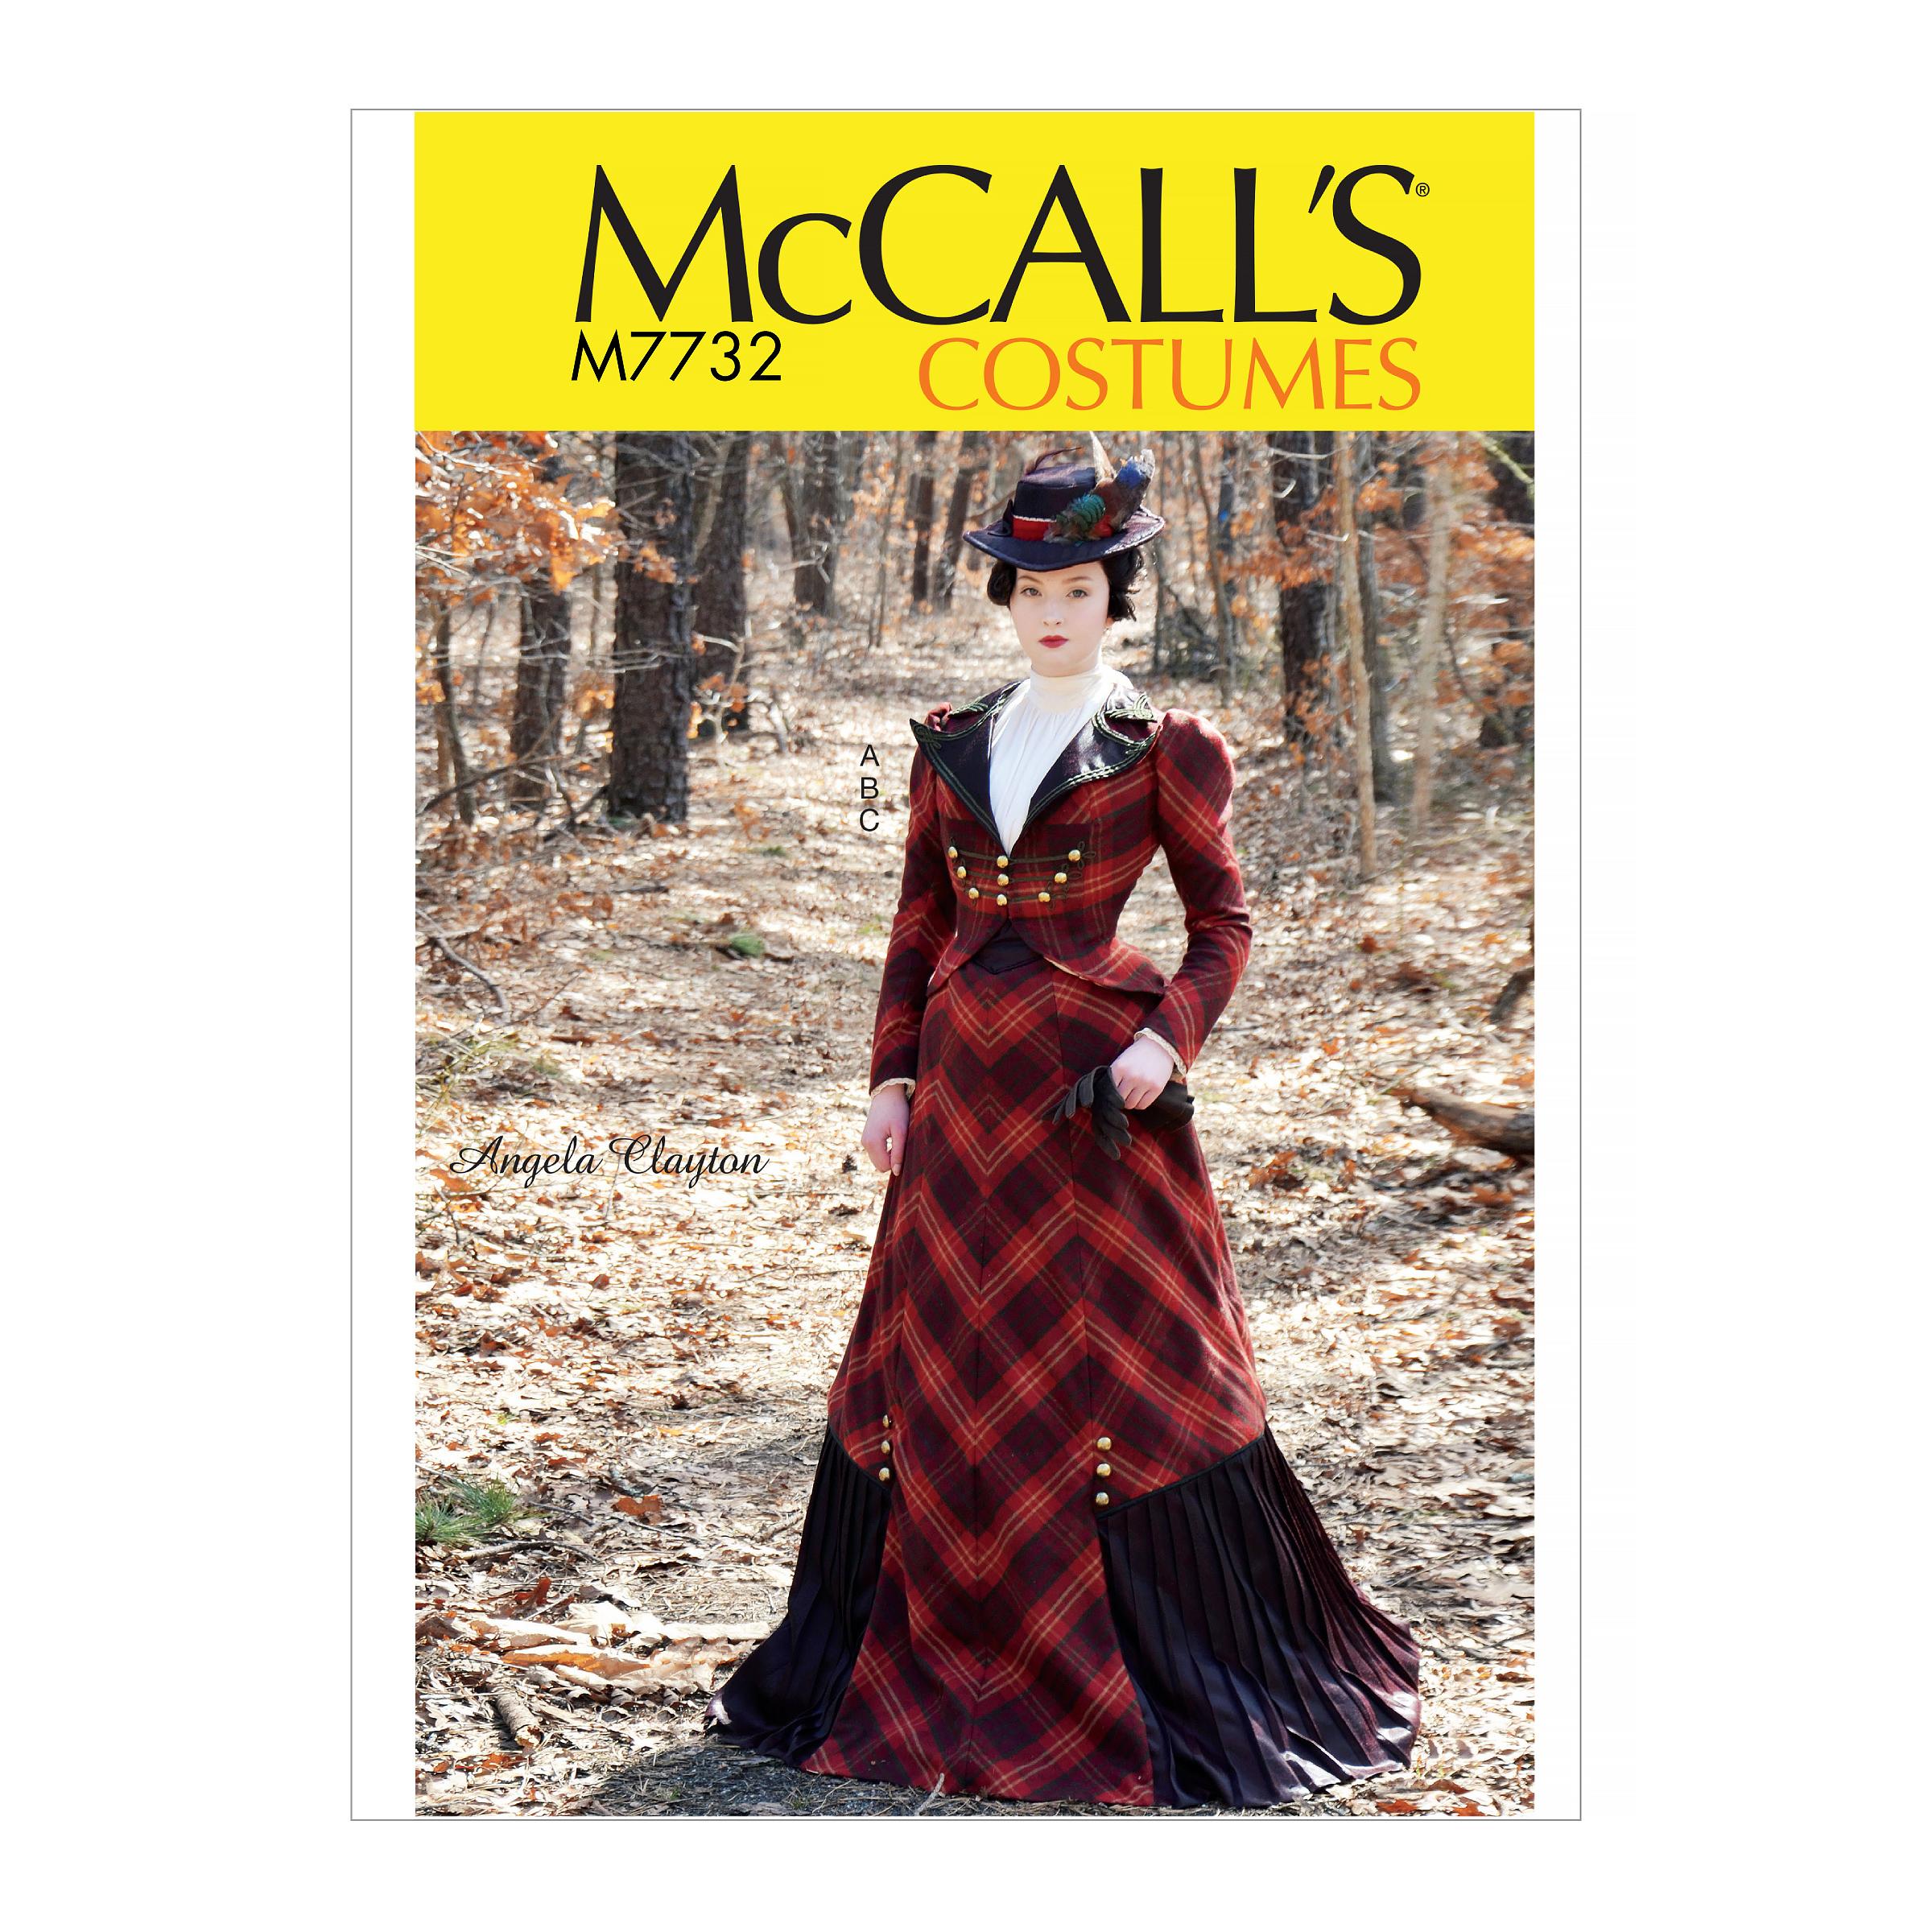 McCalls M7732 Costumes